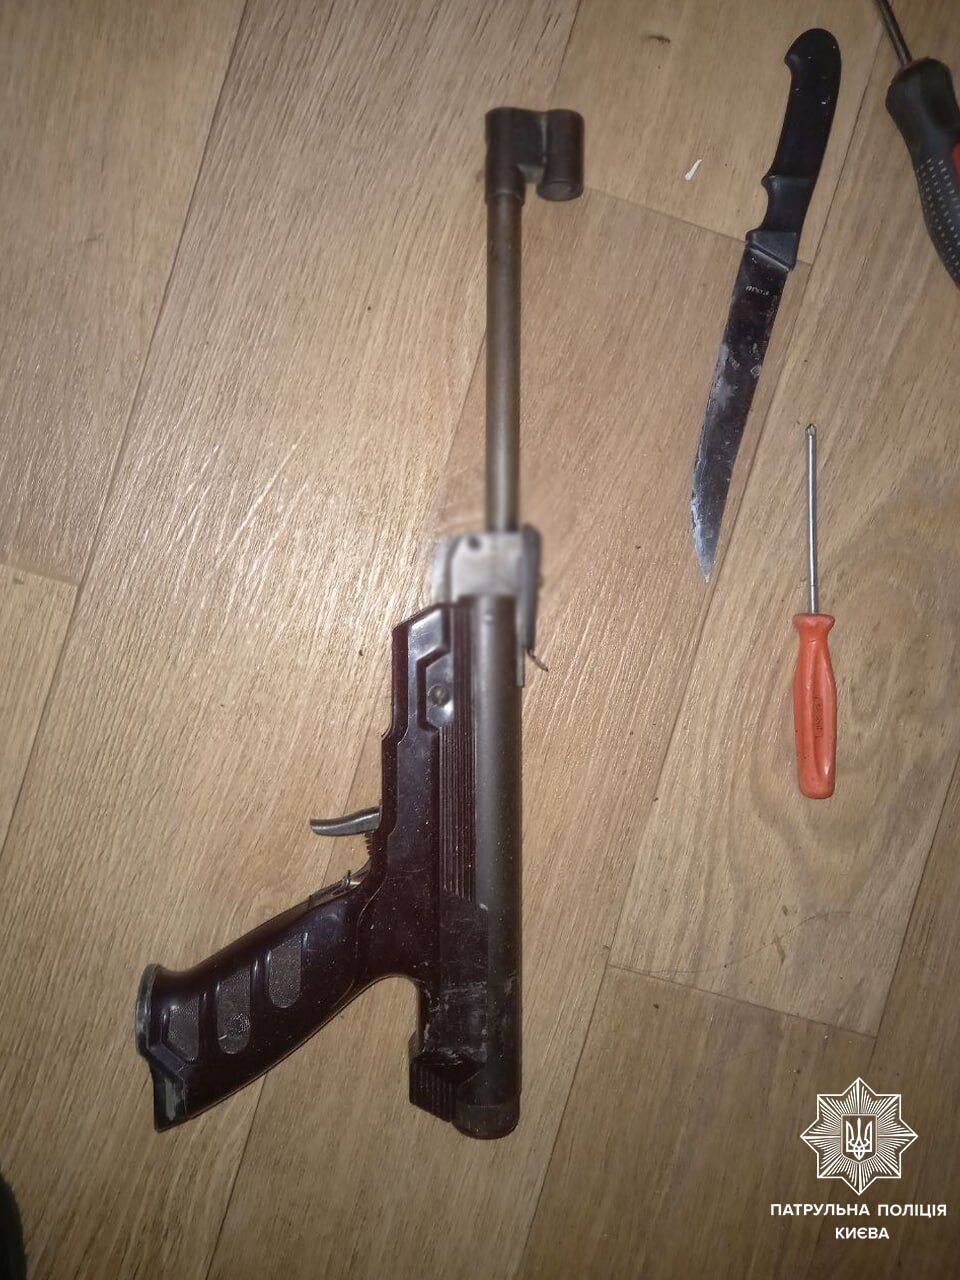 В Киеве, приехав на вызов о громкой музыке, патрульные обнаружили у нарушителей предметы, похожие на оружие. Фото